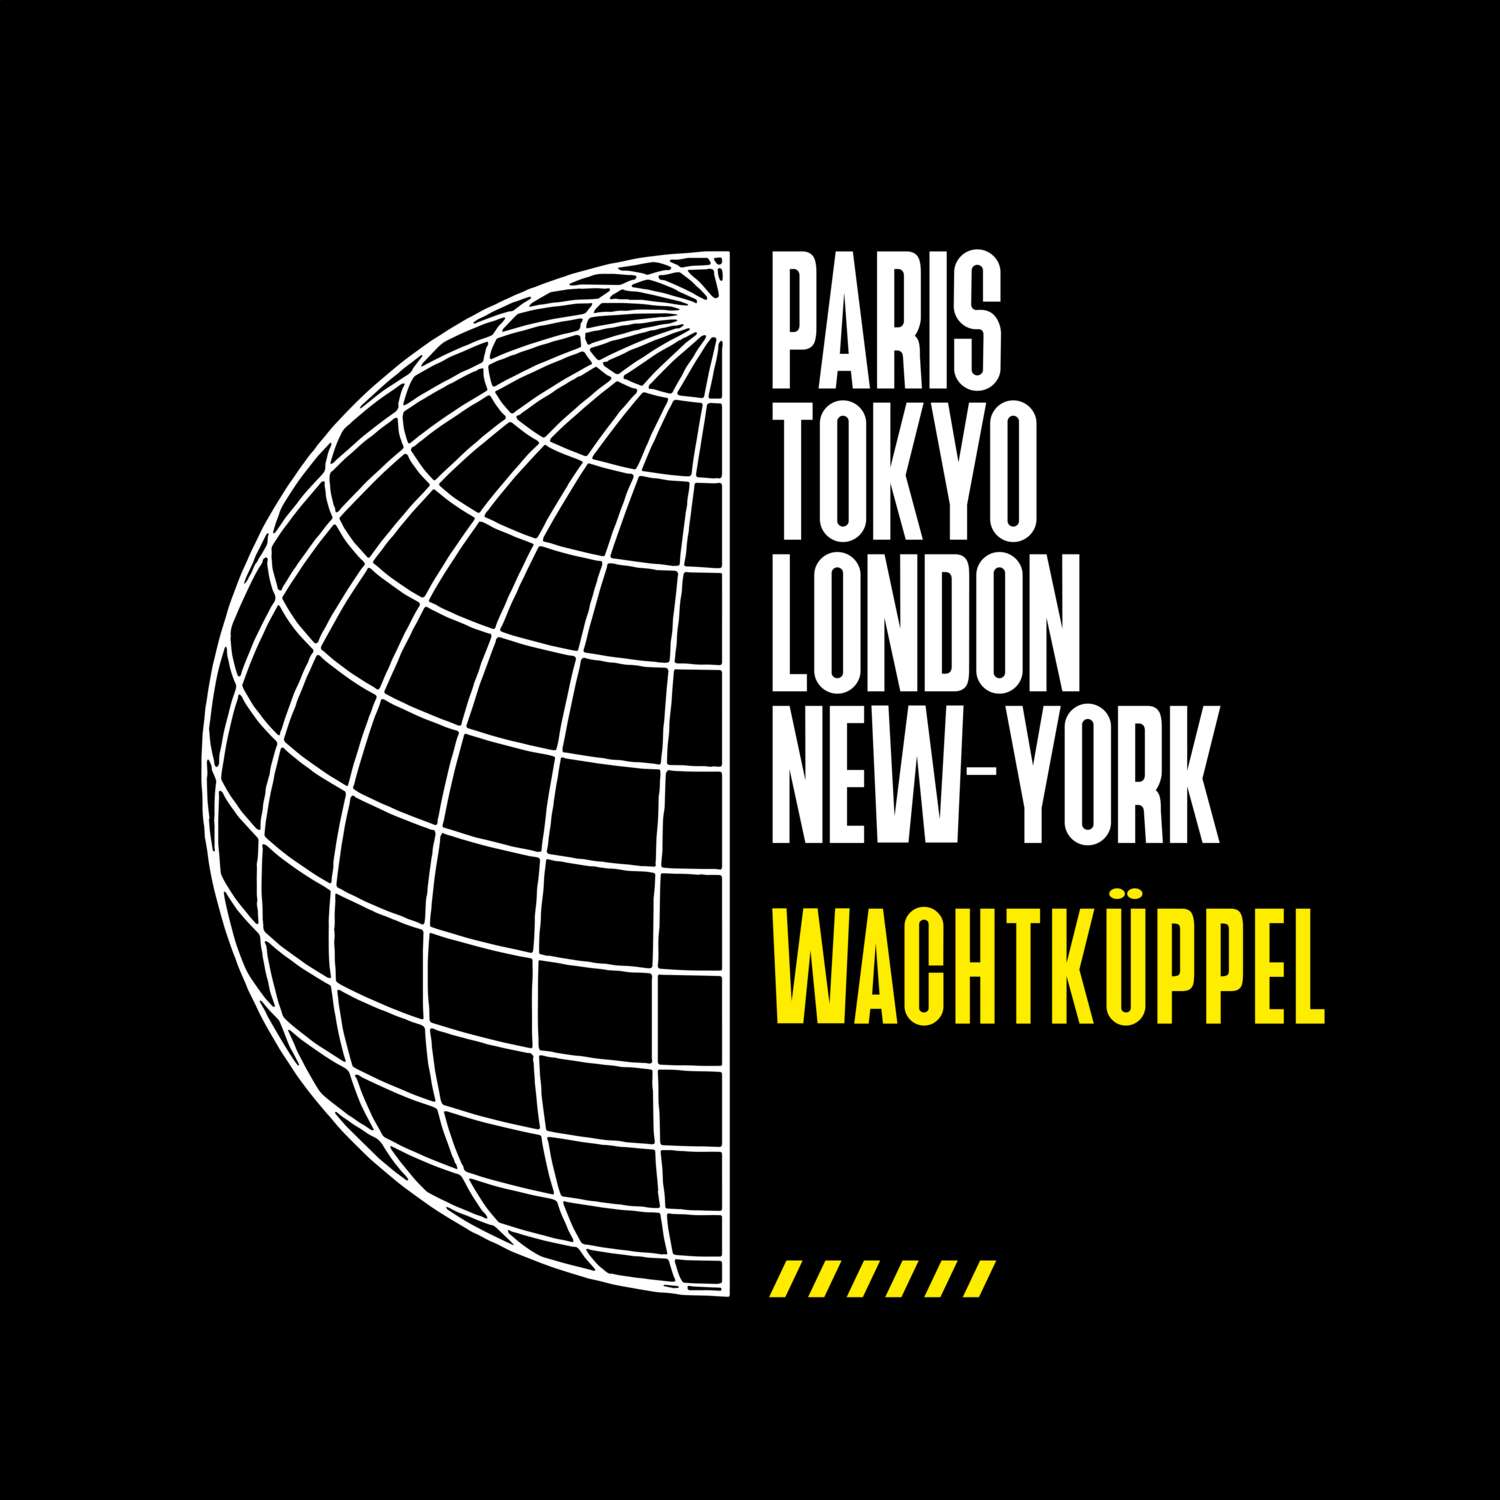 Wachtküppel T-Shirt »Paris Tokyo London«